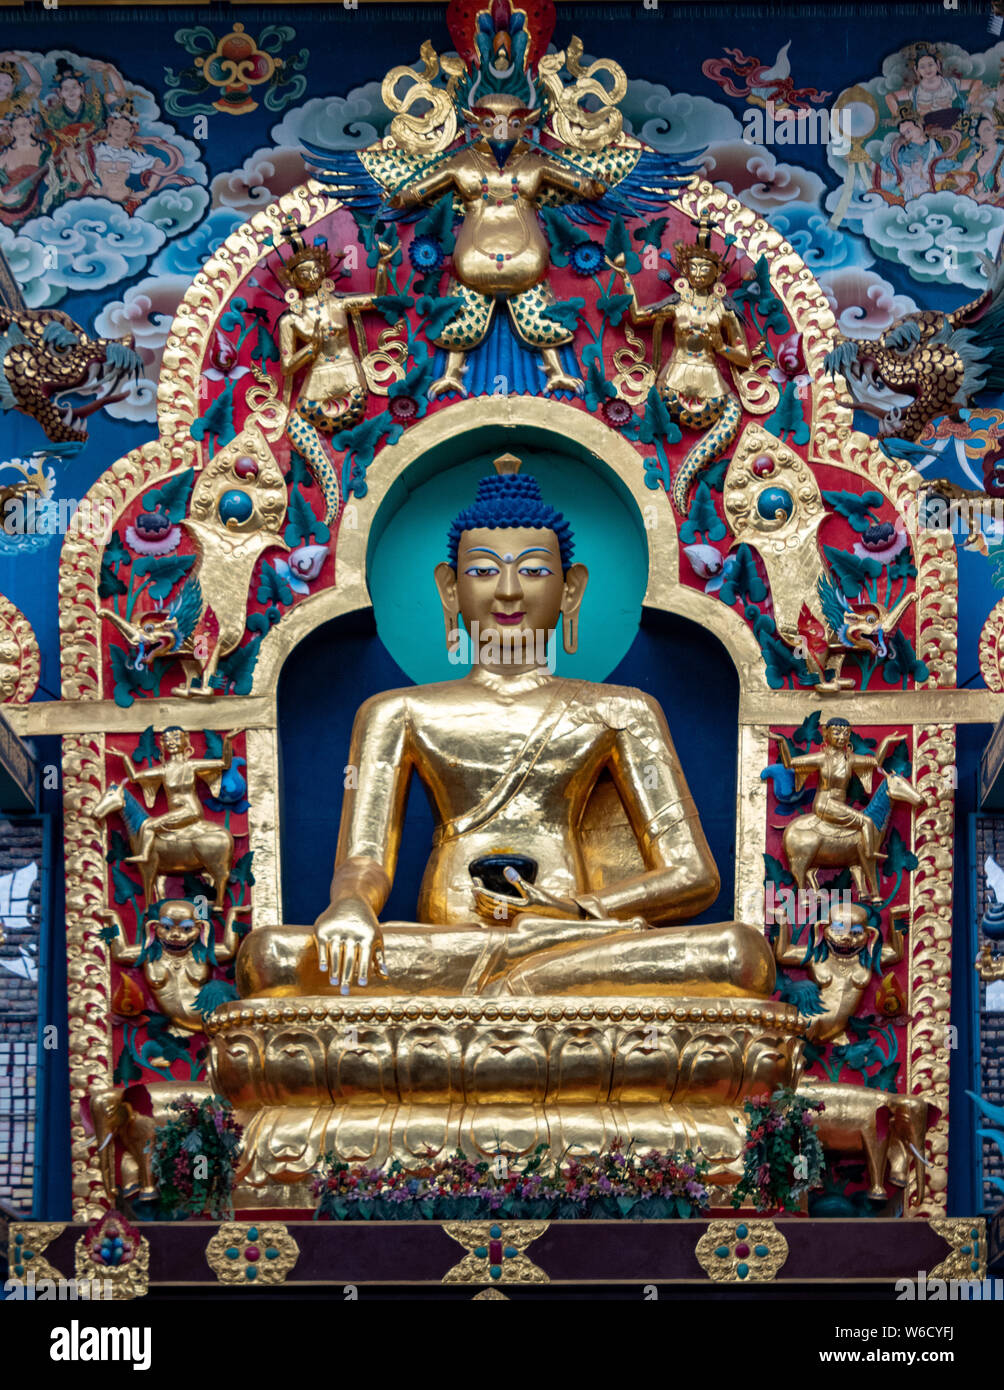 Le monastère Nyingmapa Namdroling est le plus grand centre d'enseignement de la lignée Nyingma du bouddhisme tibétain dans le monde. Banque D'Images